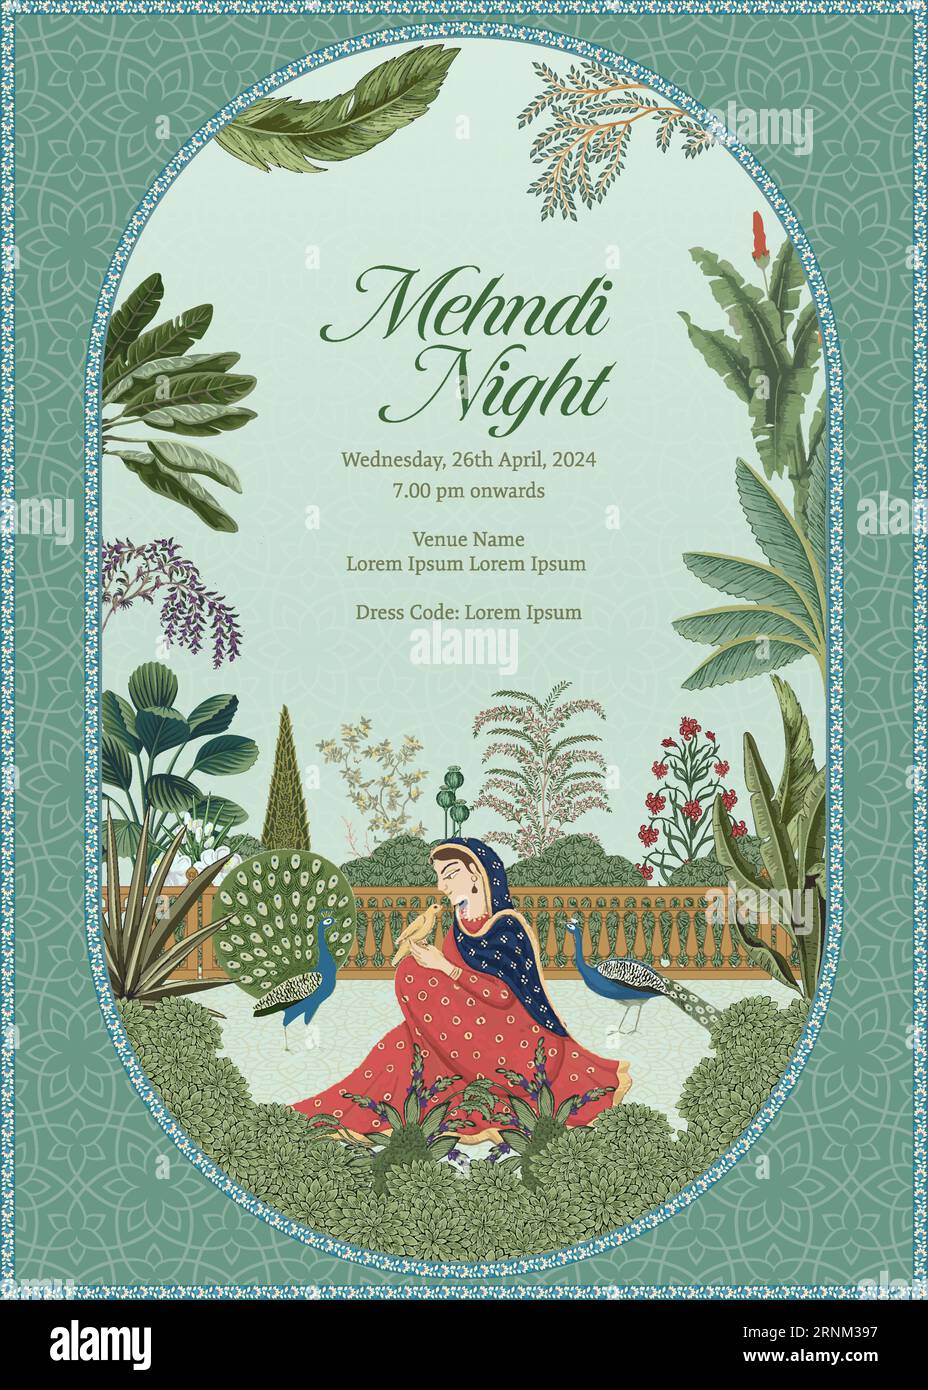 Motif carte de mariage moghol indien traditionnel. Carte d'invitation pour l'illustration vectorielle d'impression de nuit Mehedi. Illustration de Vecteur